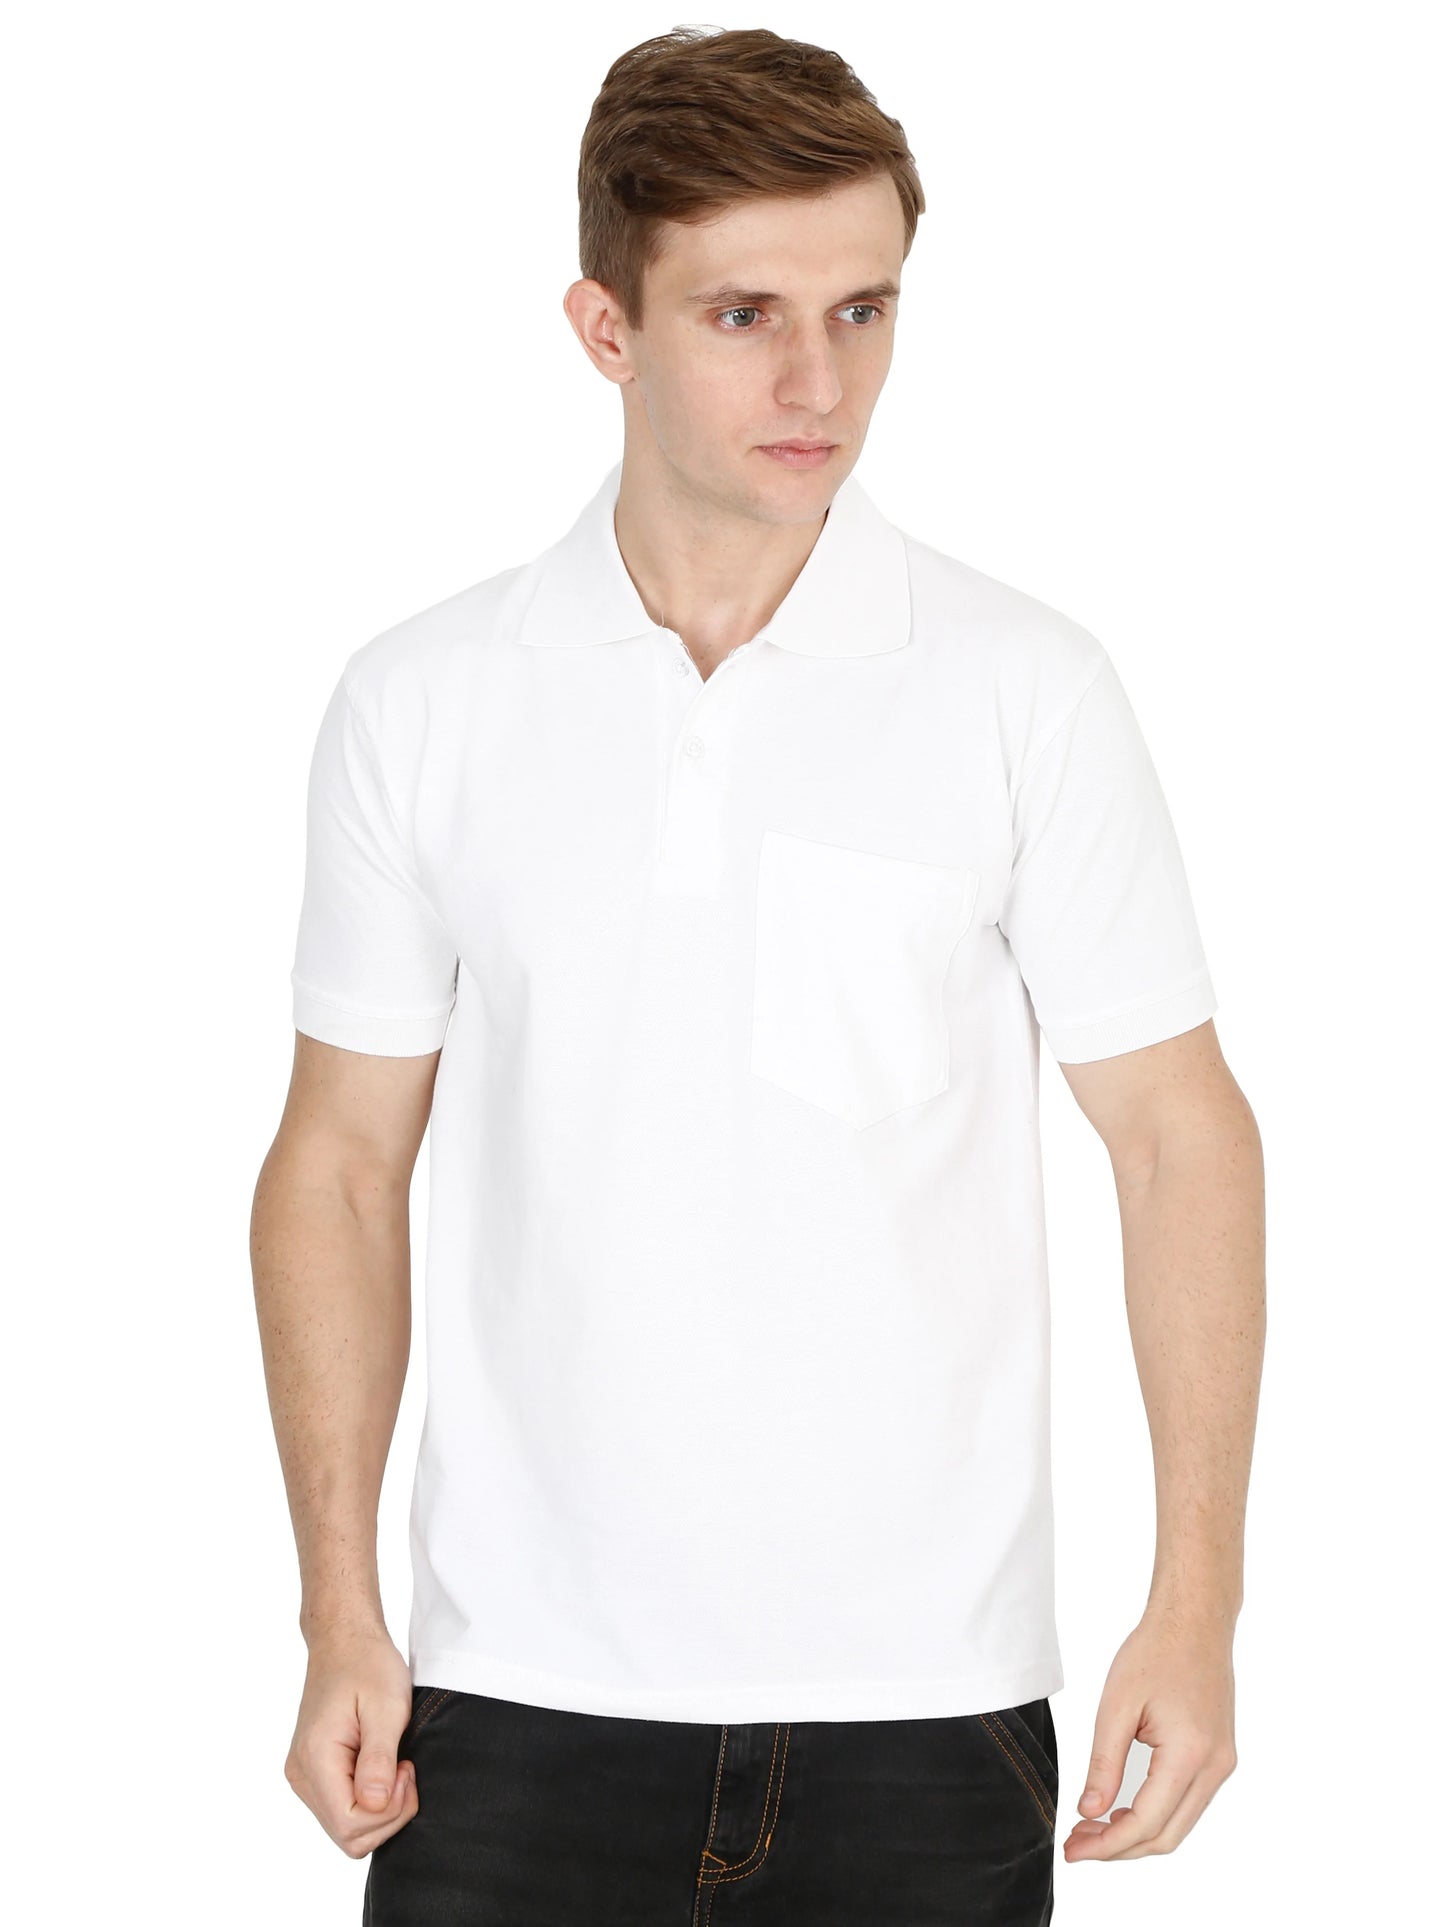 Men's Cotton Plain Polo Neck Half Sleeve White Color T-Shirt